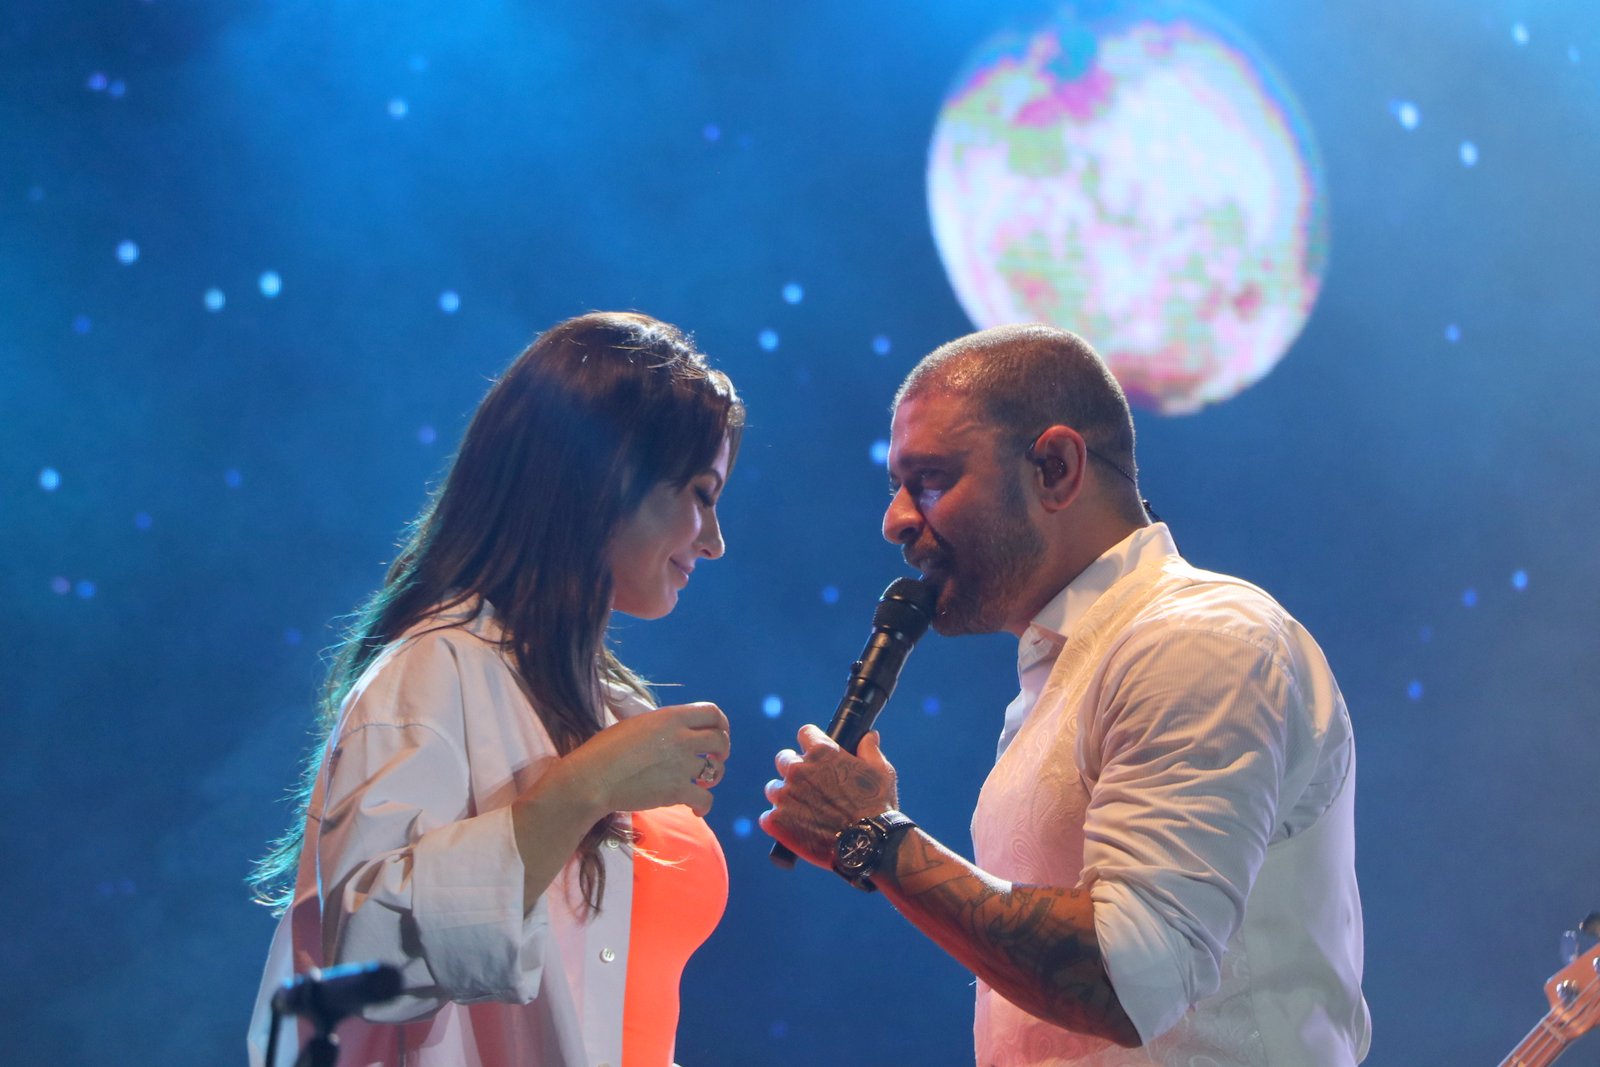 Foto de Paolla Oliveira e Diogo Nogueira no palco de um show, com um telão exibindo uma lua em um céu estrelado ao fundo enquanto o cantor canta no microfone e ela dança